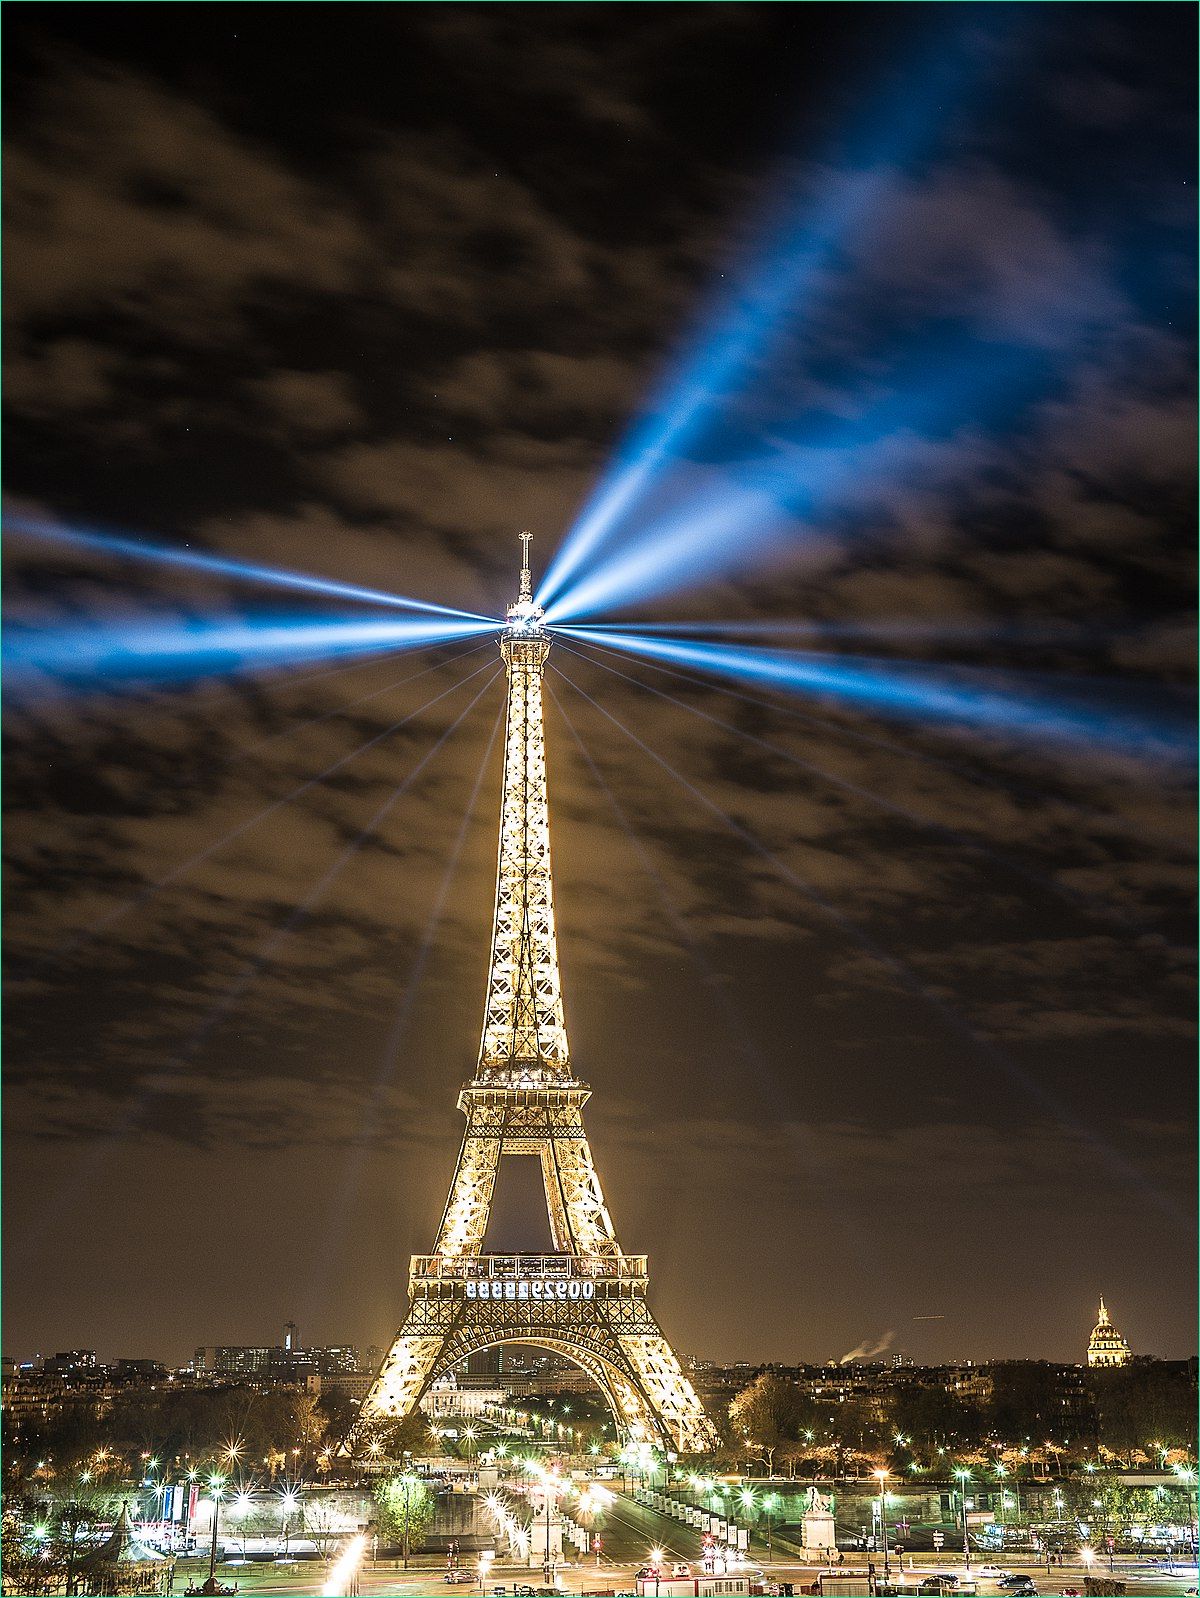 Dessin tour Eiffel à Imprimer Gratuit Luxe Photos Filecop21 Human Energy La tour Eiffel Paris Clima